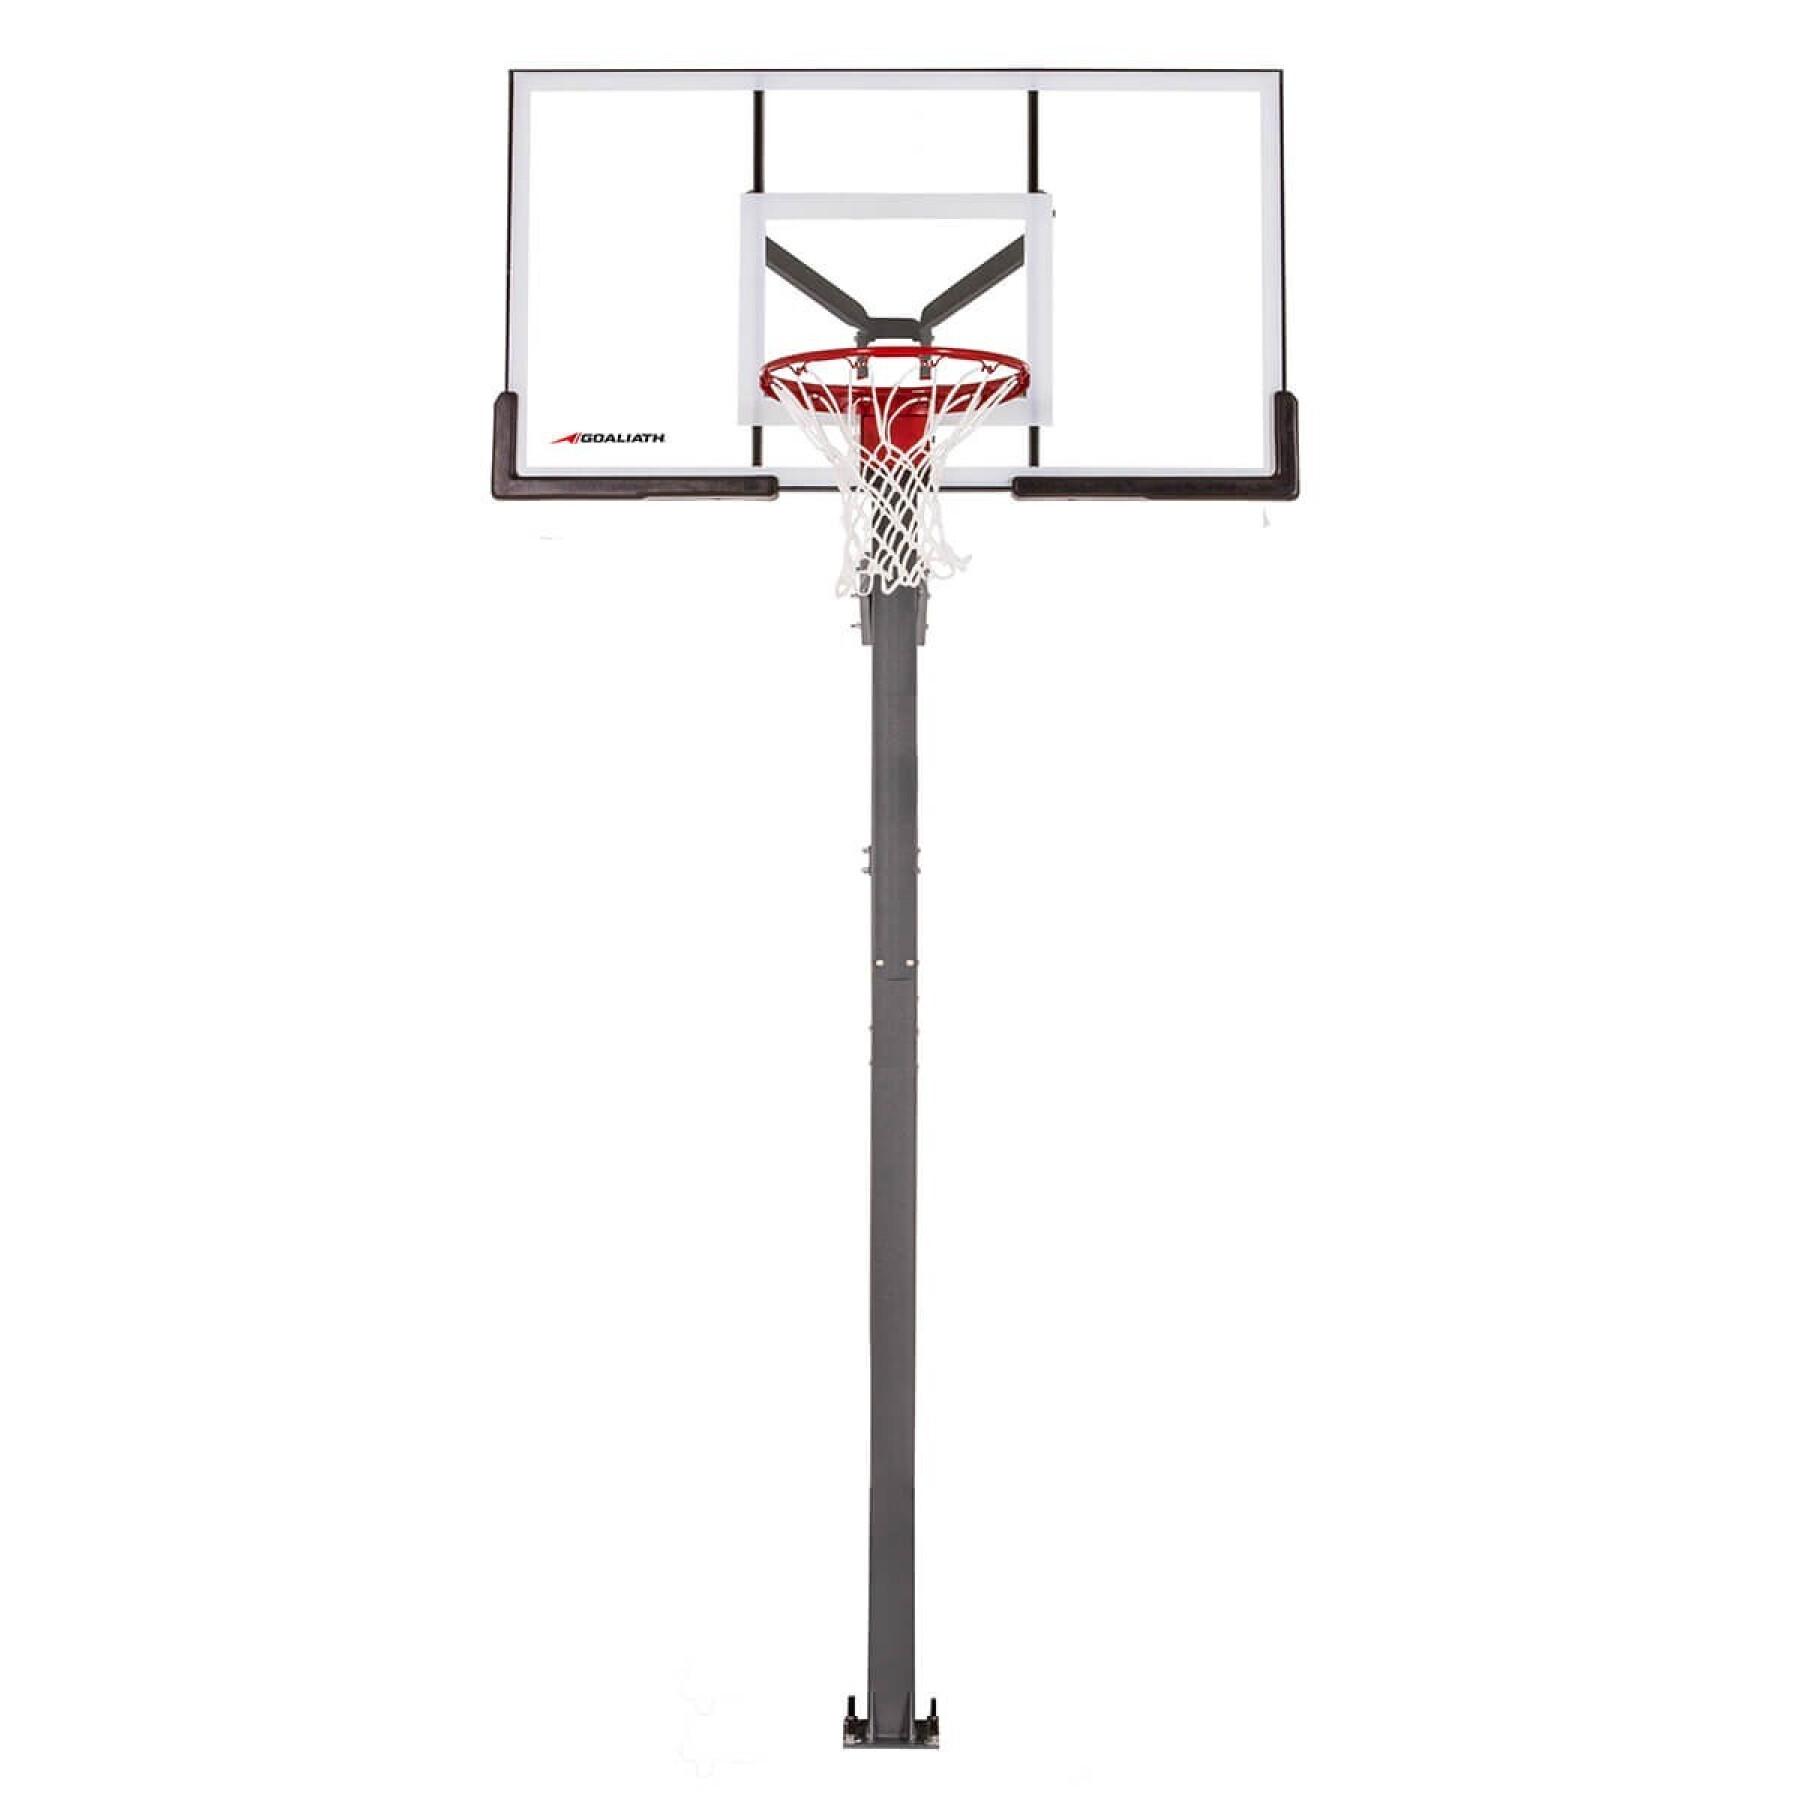 Basketballkorb Goaliath GB60